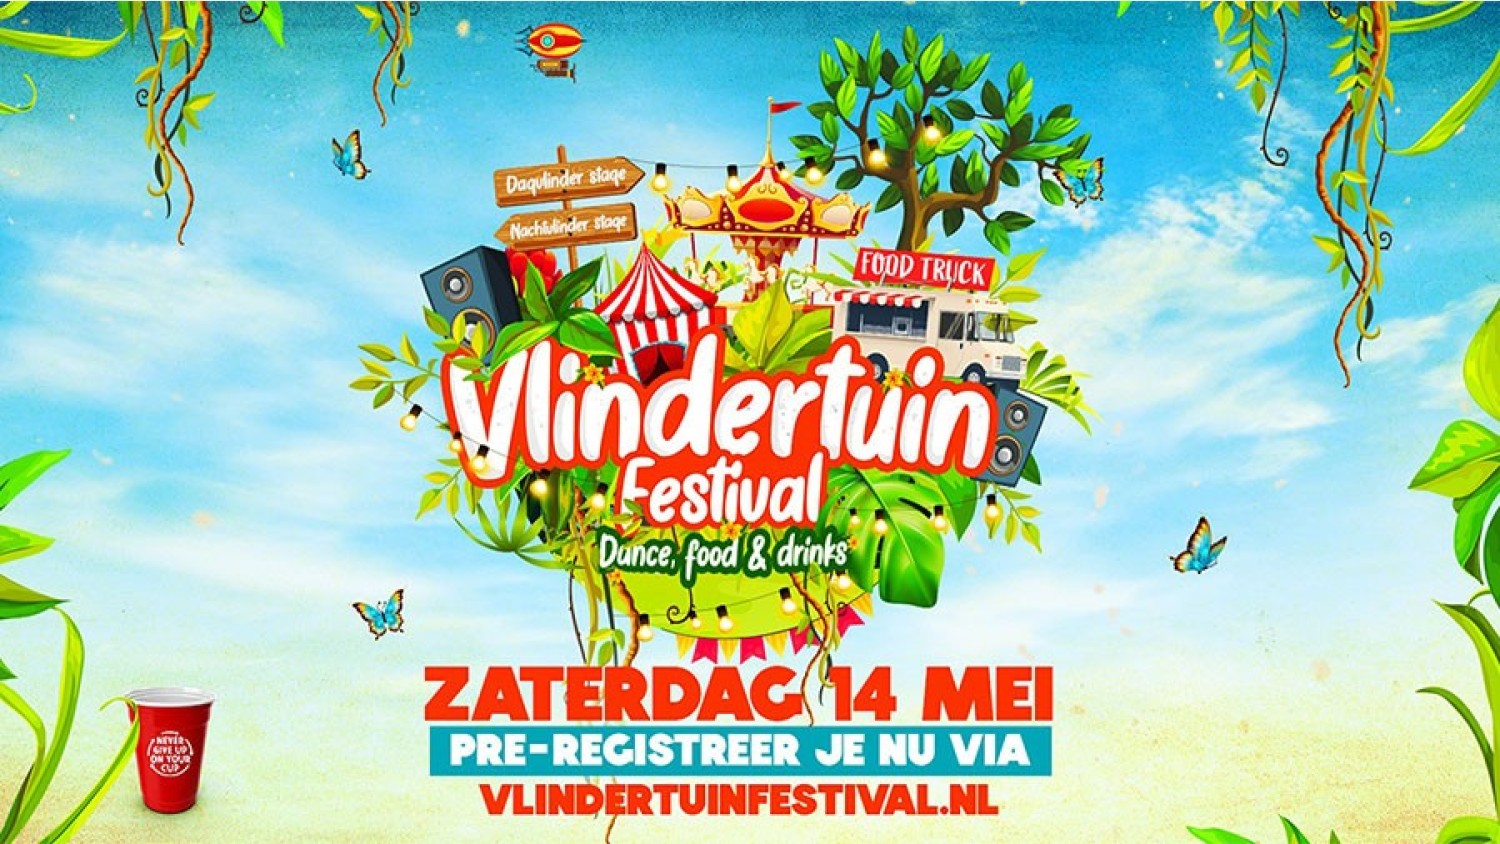 Party nieuws: Pre-registratie Vlindertuin Festival geopend